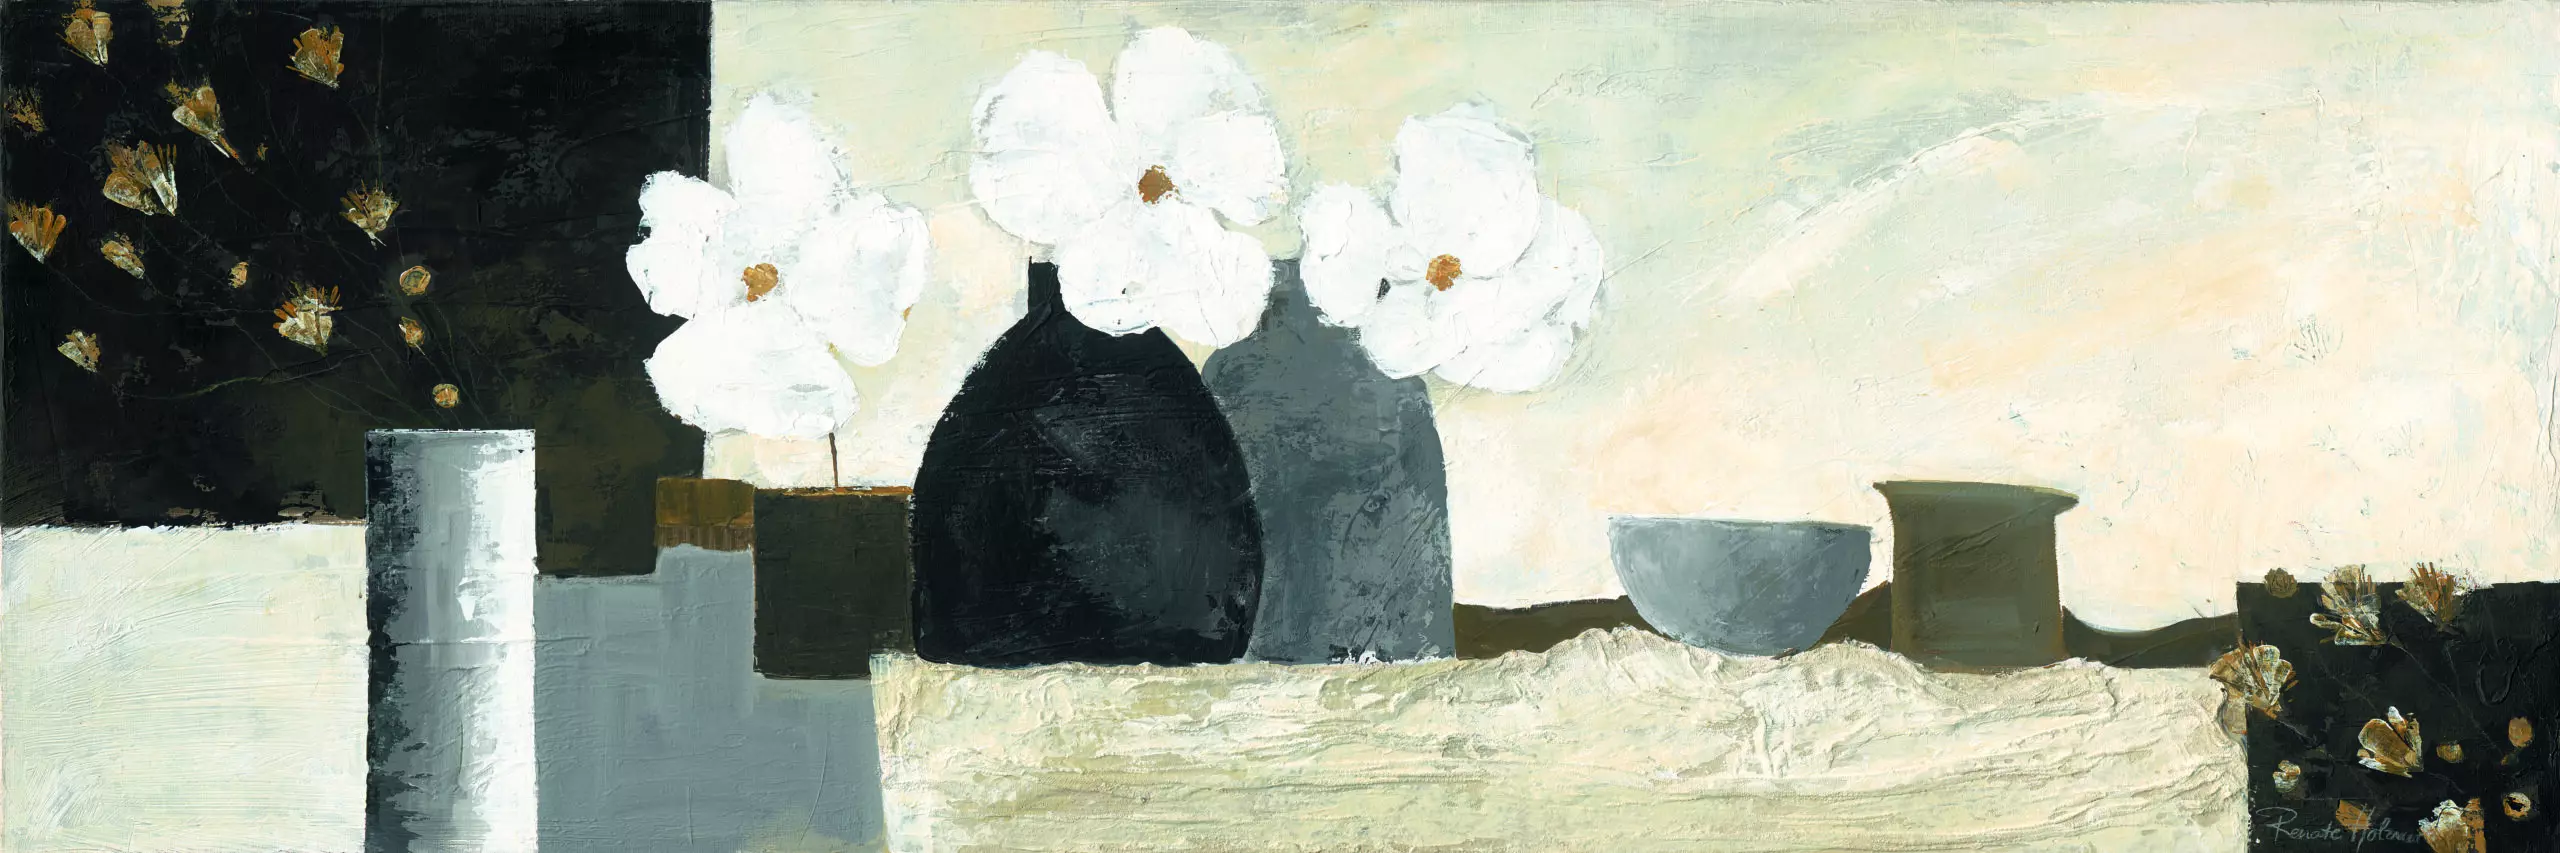 Wandbild (5000) White Flowers präsentiert: Stillleben,Kreatives,Abstrakt,Floral,Modern,Sonstige Stillleben